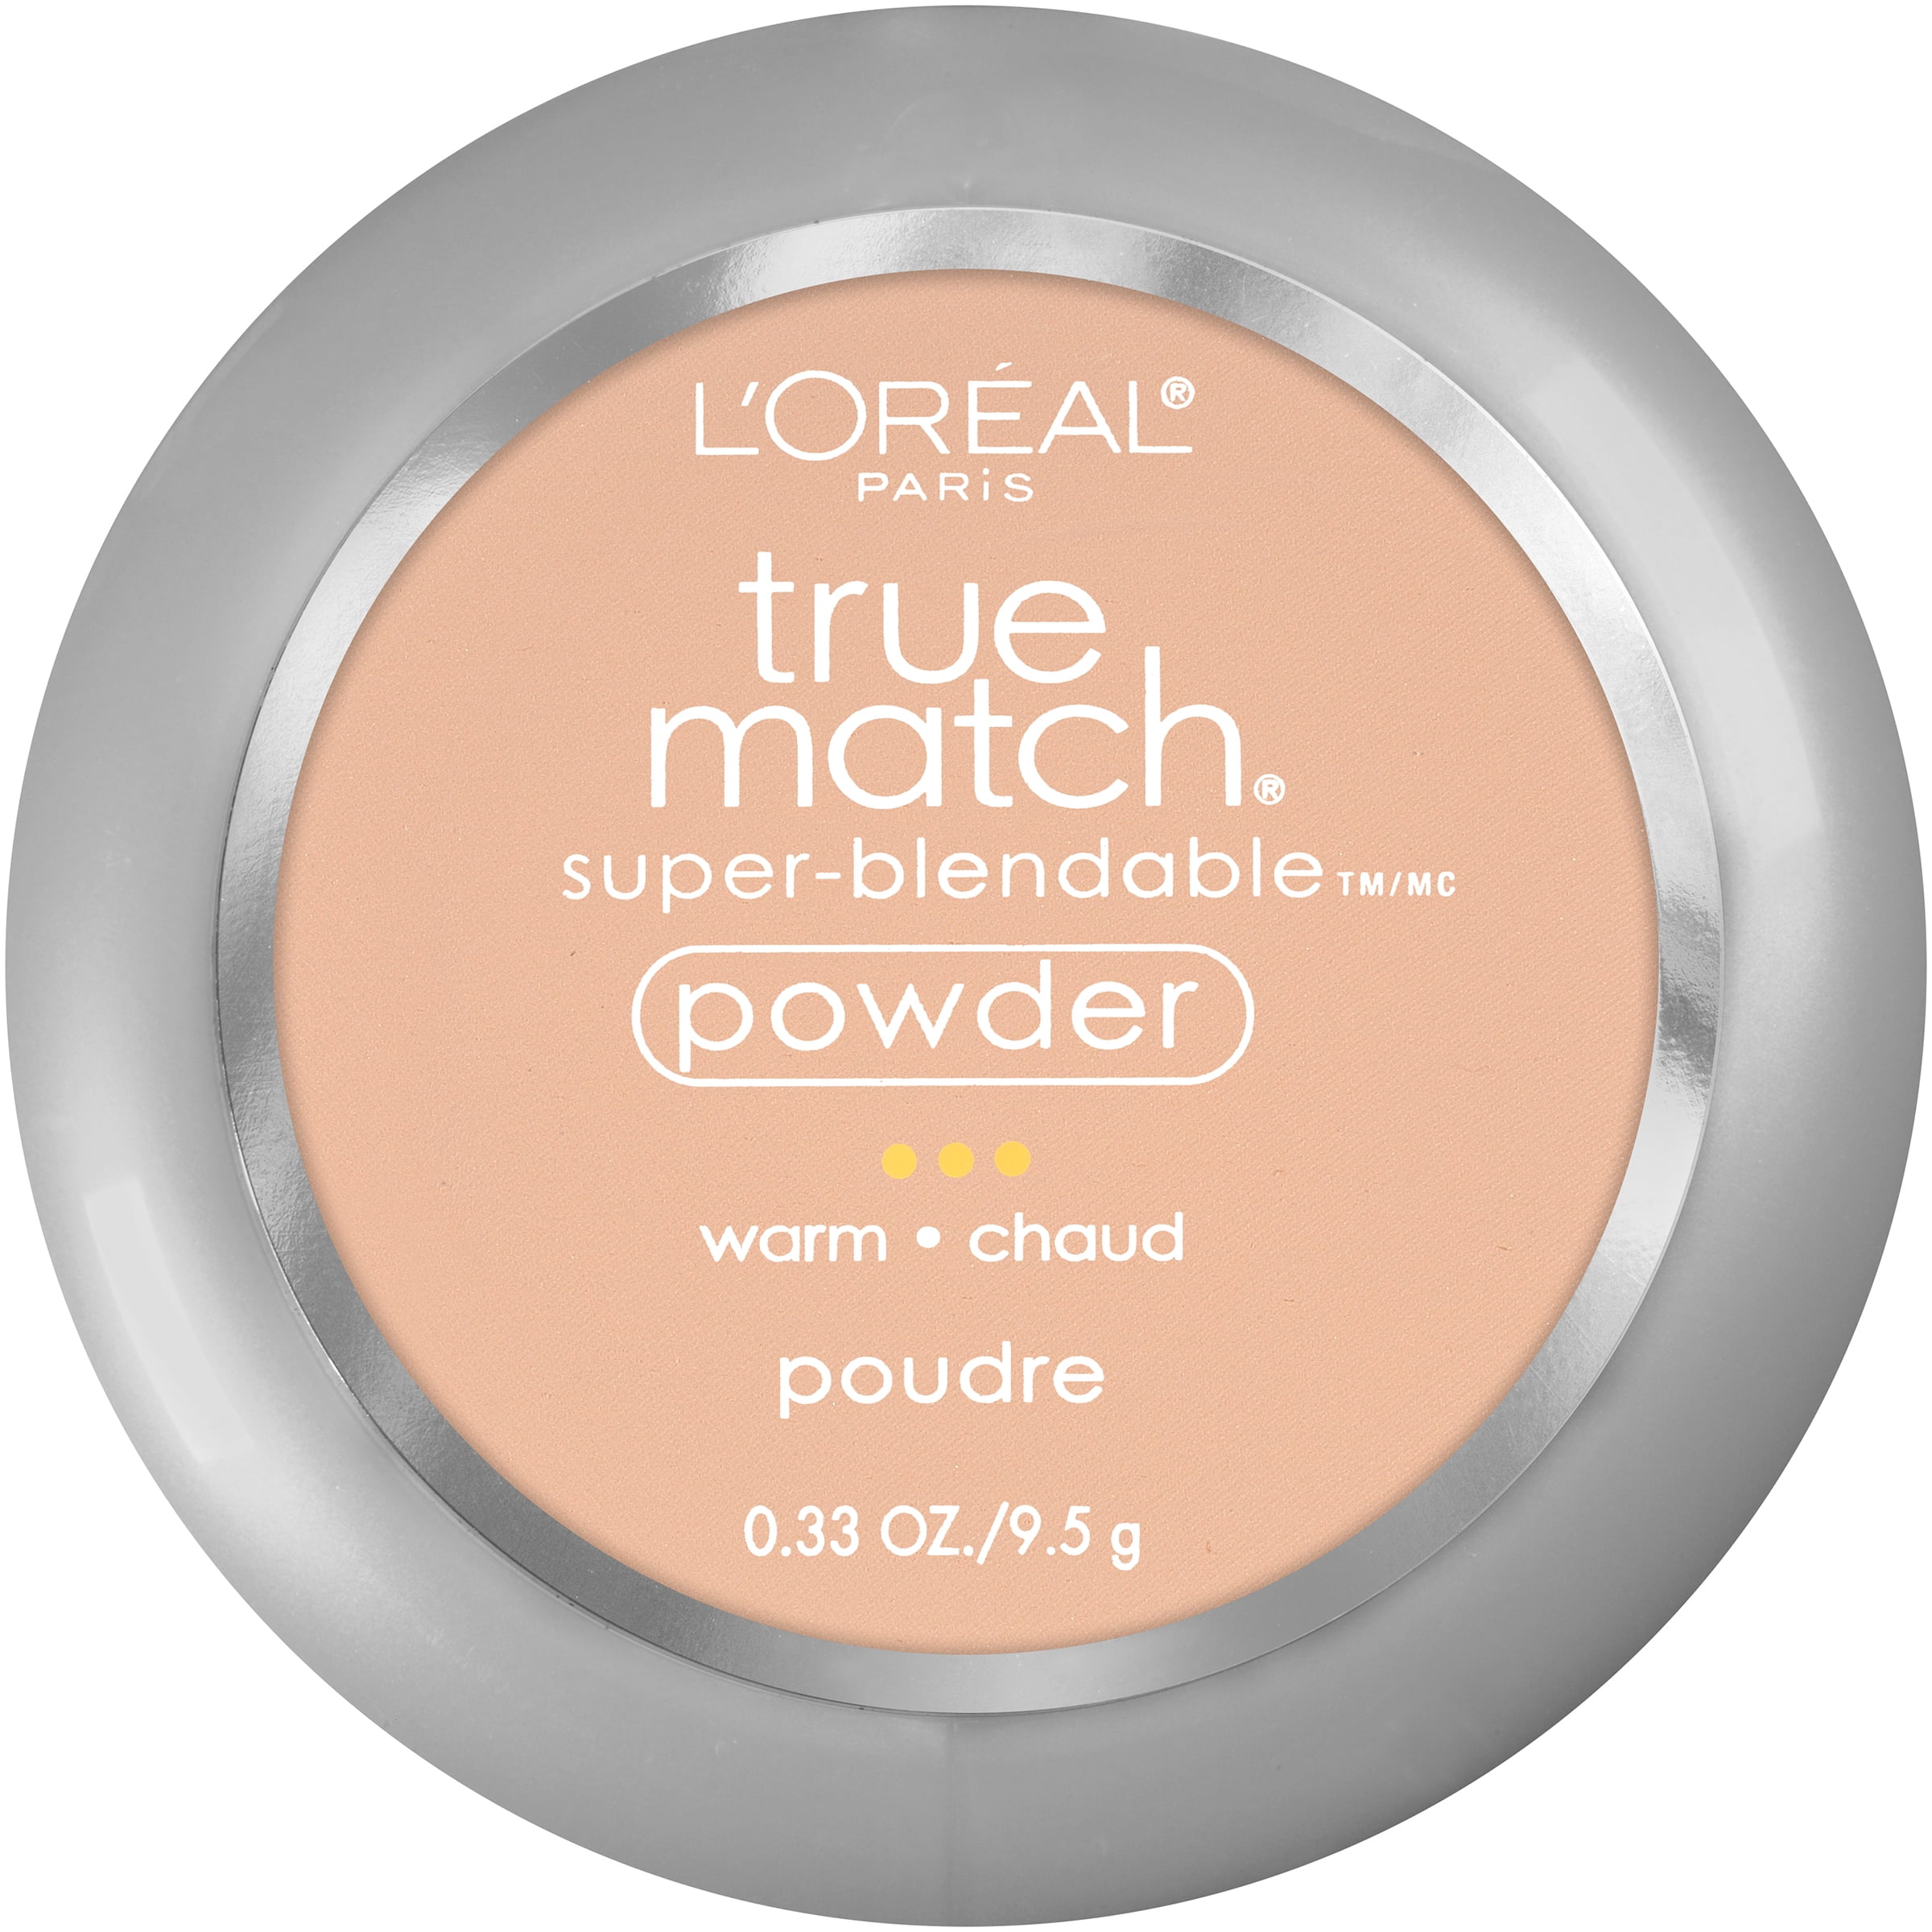 L'Oreal Paris True Match Super-Blendable Oil Free Makeup Powder, Nude Beige, 0.33 oz.